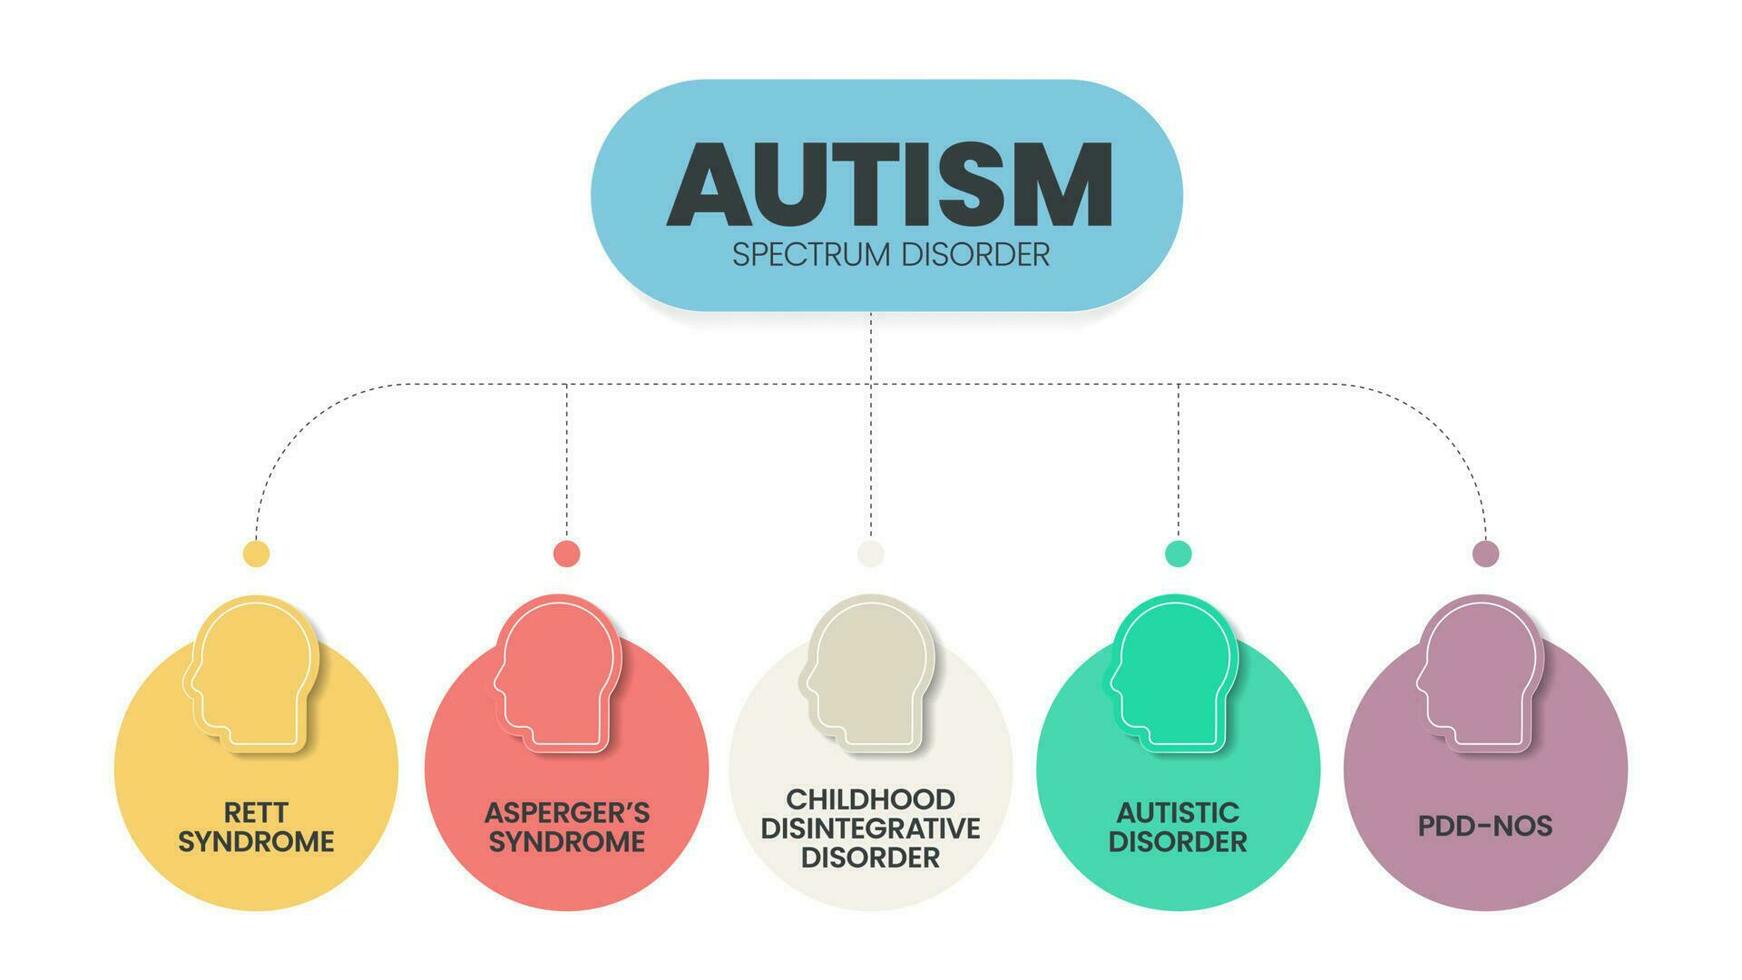 autisme spectrum wanorde asd infographic presentatie sjabloon met pictogrammen heeft 5 stappen zo net zo rett syndroom, asperger syndroom, pdd-nrs, autistisch wanorde en kinderjaren wanorde. diagram vector. vector